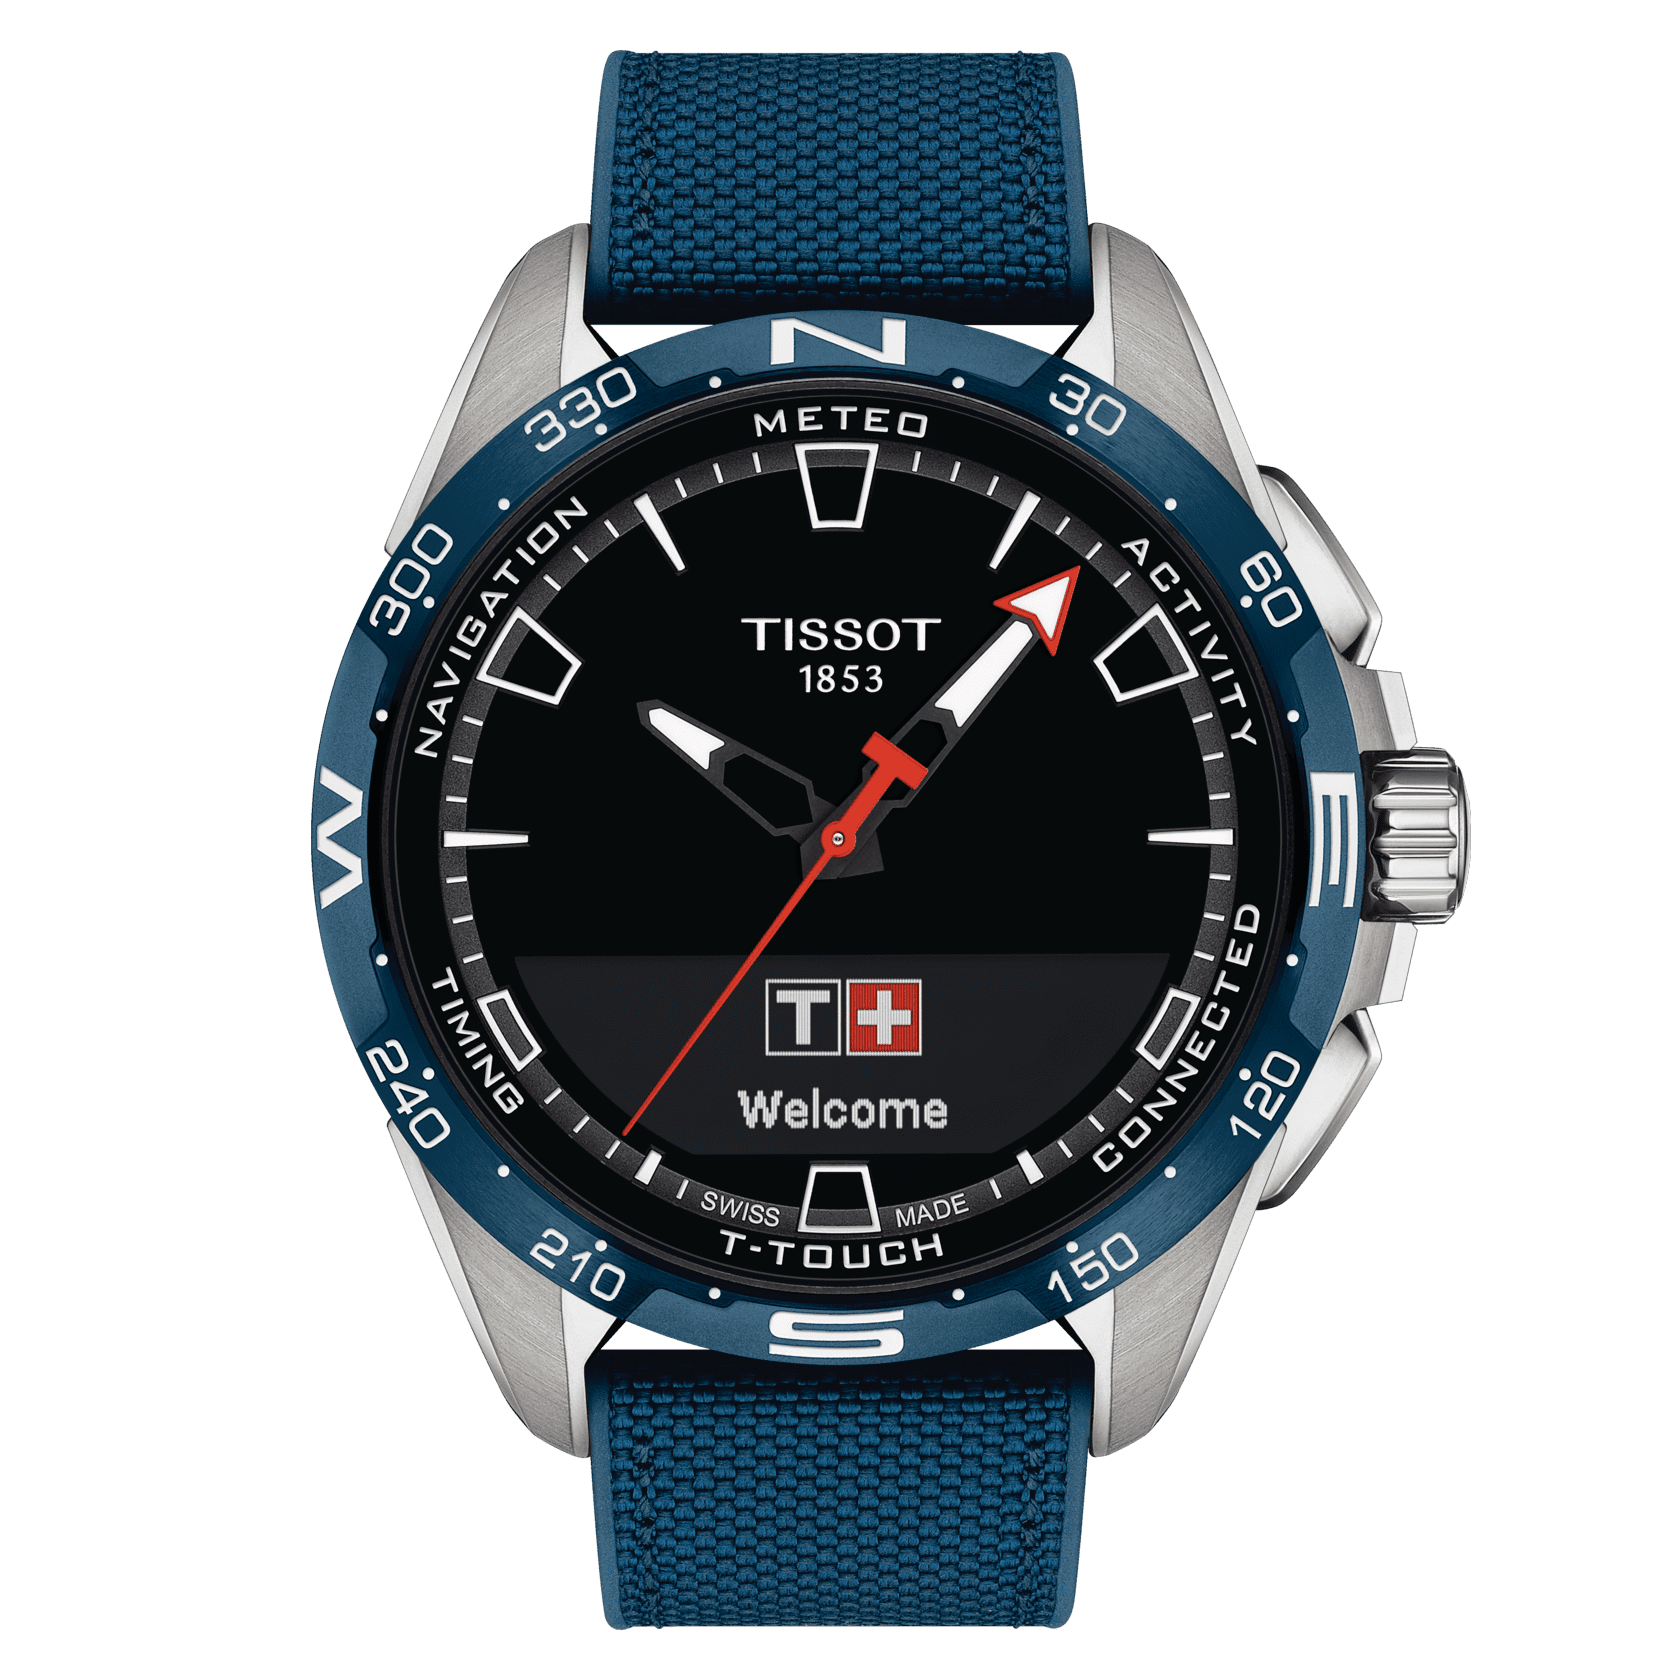 TISSOT T-タッチ コネクト ソーラー | モデル T1214204705106 | Tissot 